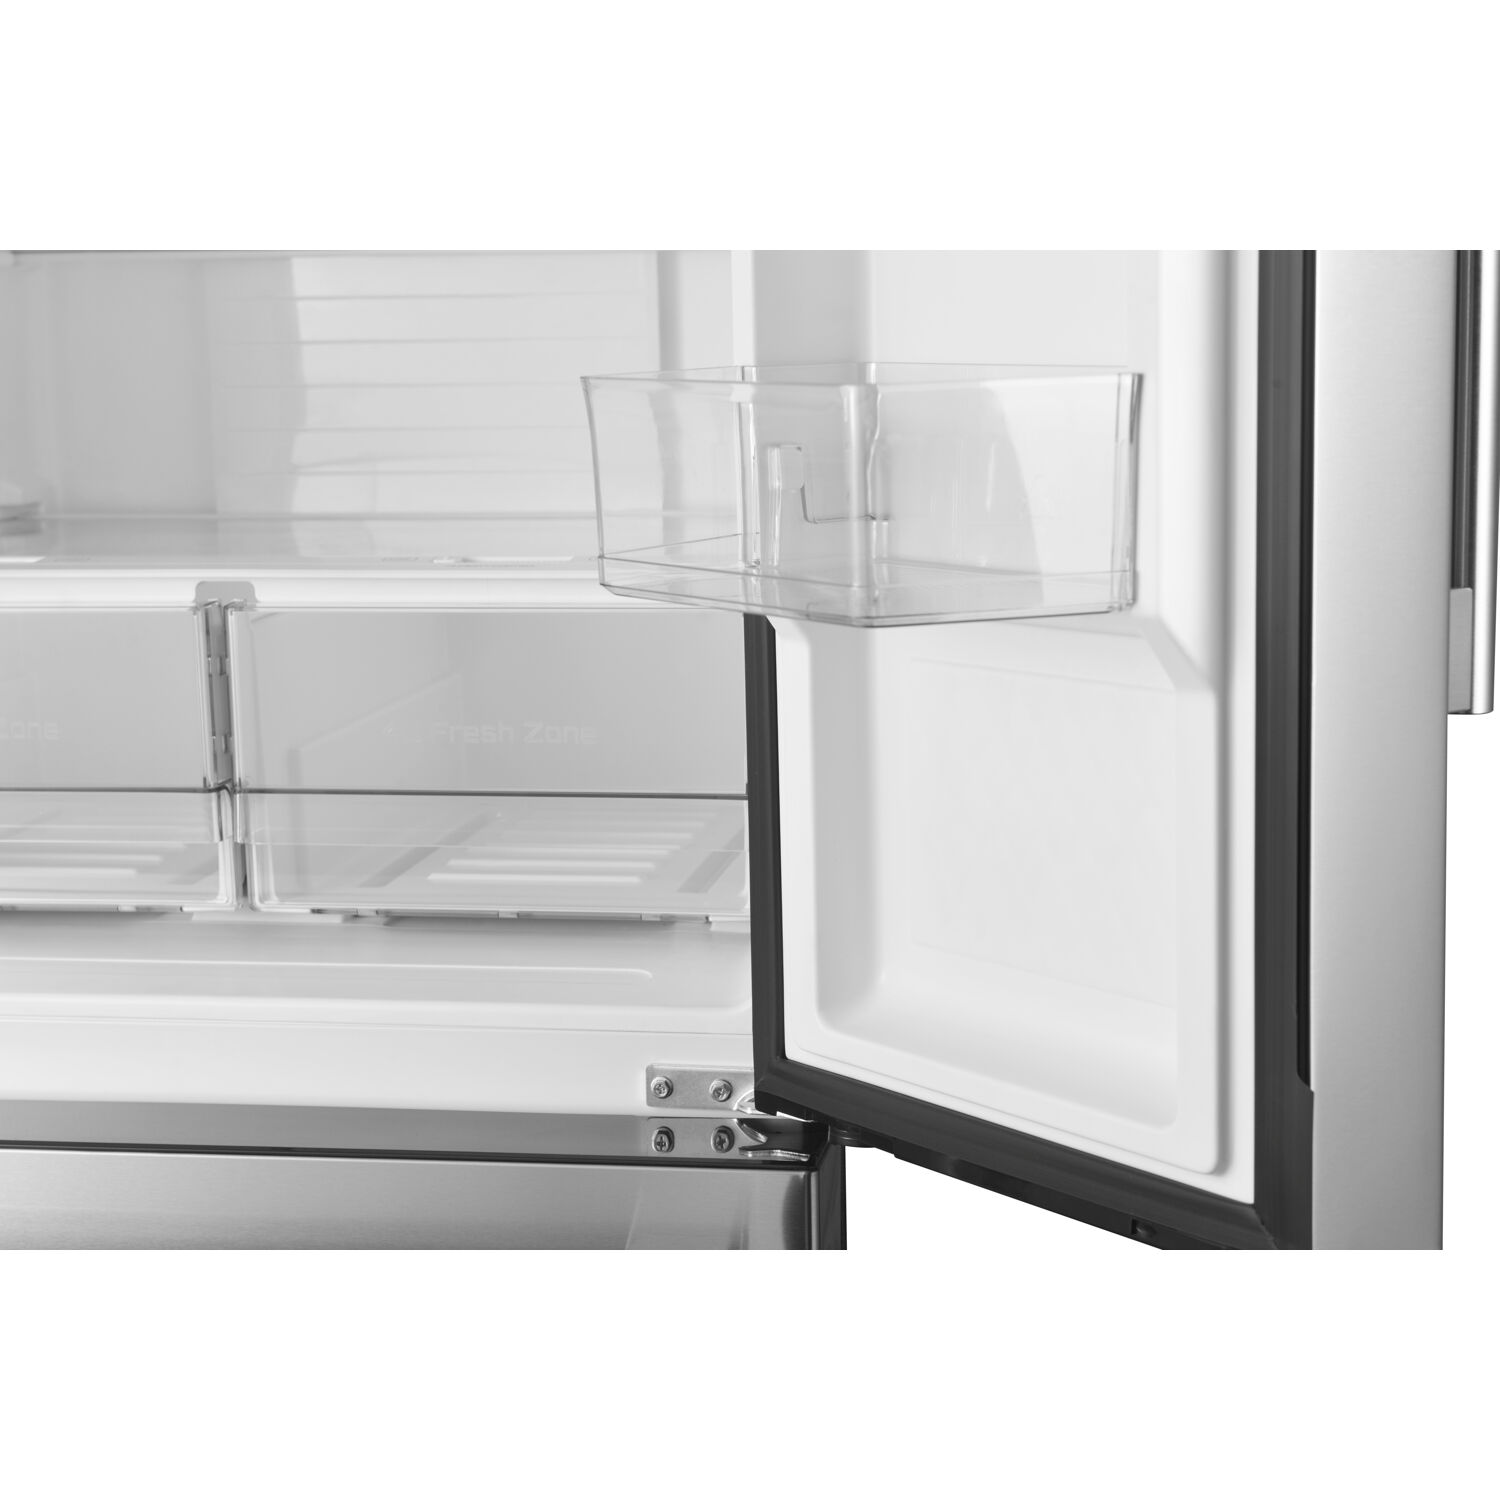 Galanz 16-Cu. Ft. 3-Door French Door Refrigerator, Stainless Steel - image 3 of 12